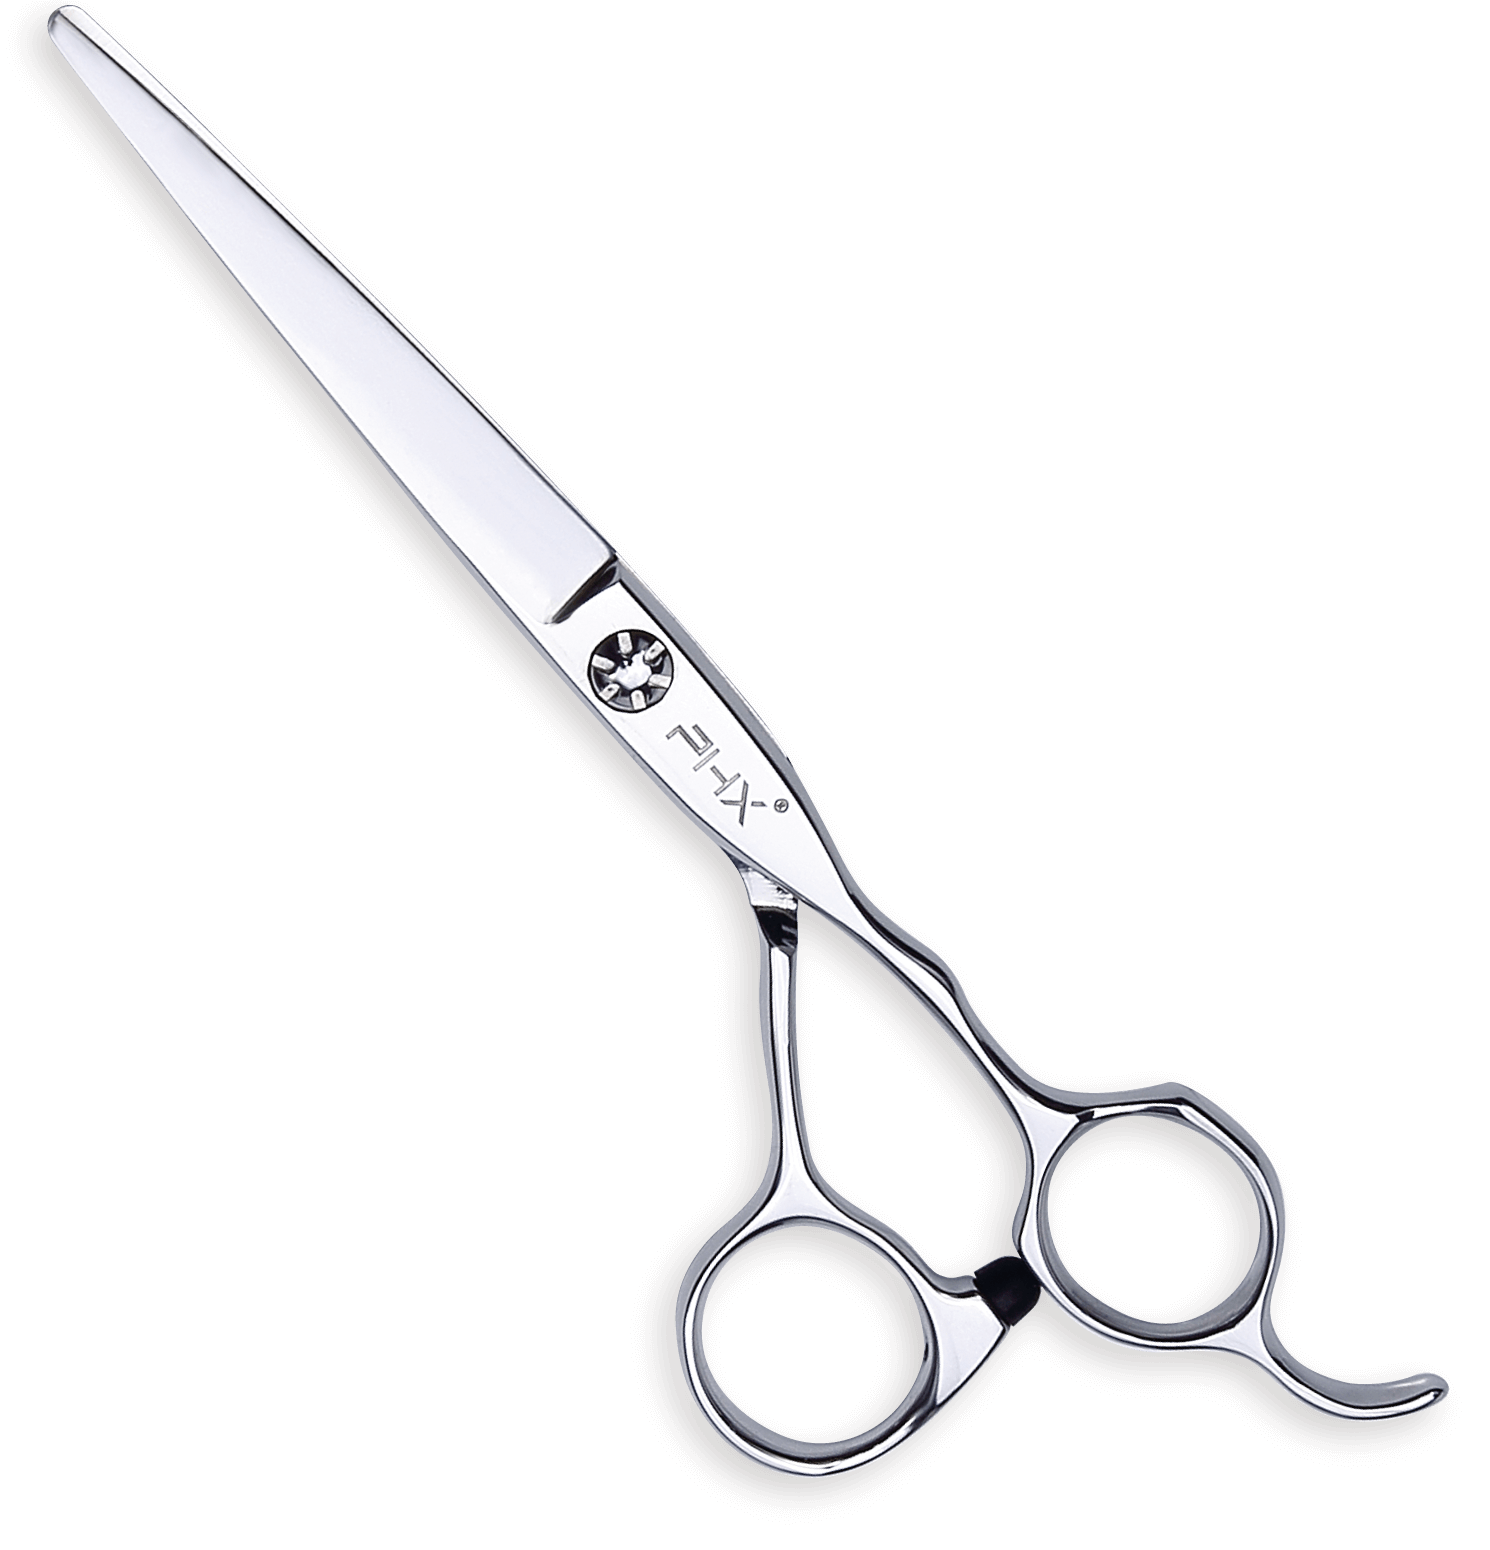 PHX Cut scissors A6